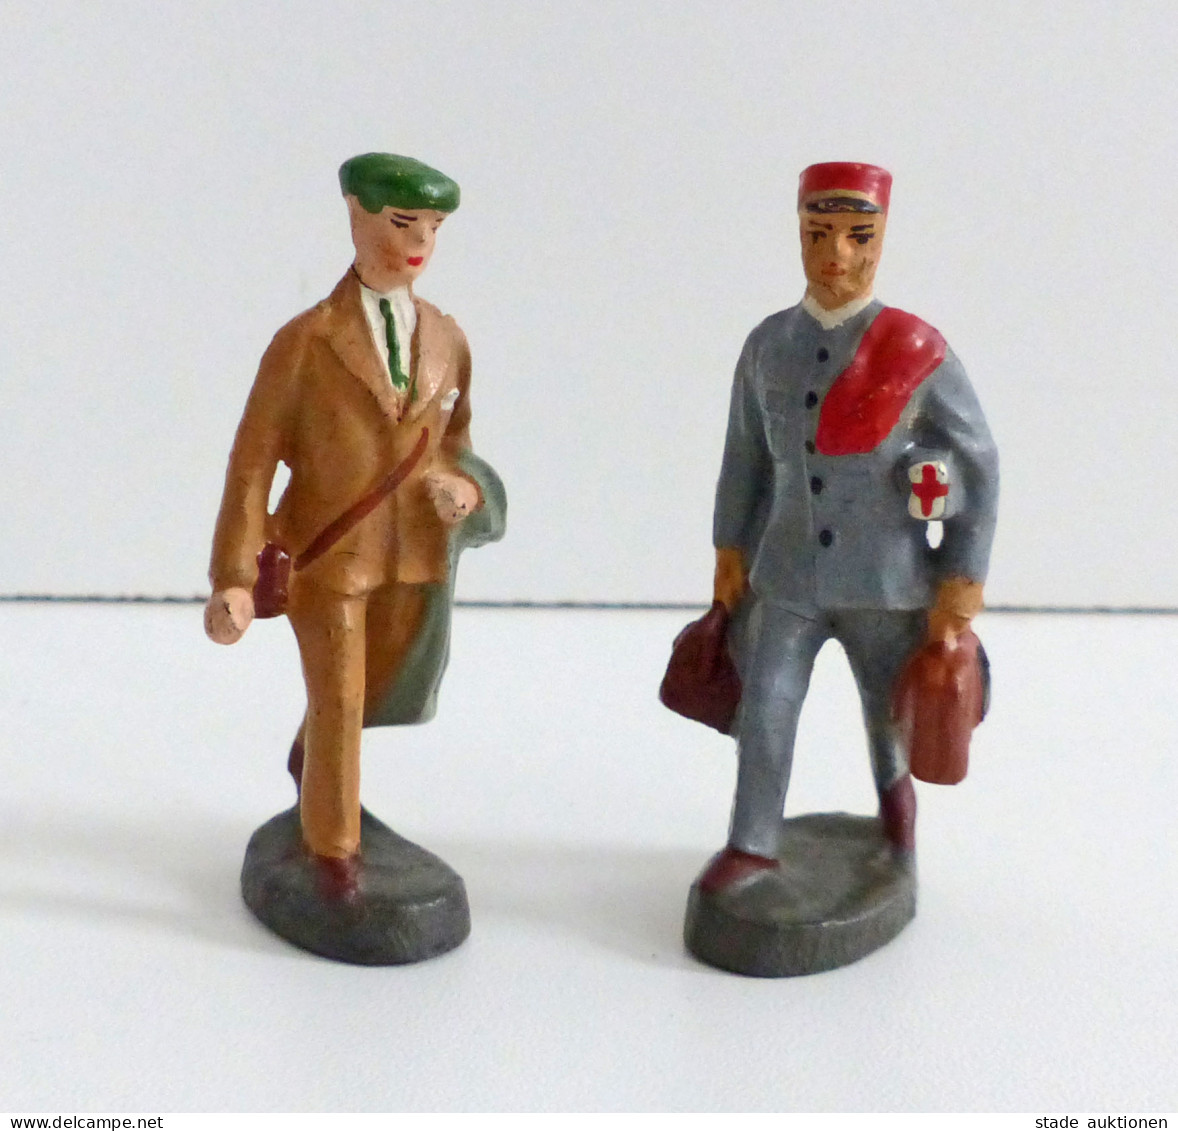 Spielzeug Elastolin 2 Figuren Sanitäter Und Tourist Aus Den 1930er Jahren Ca. 6cm Hoch I-II Jouet - Jeux Et Jouets